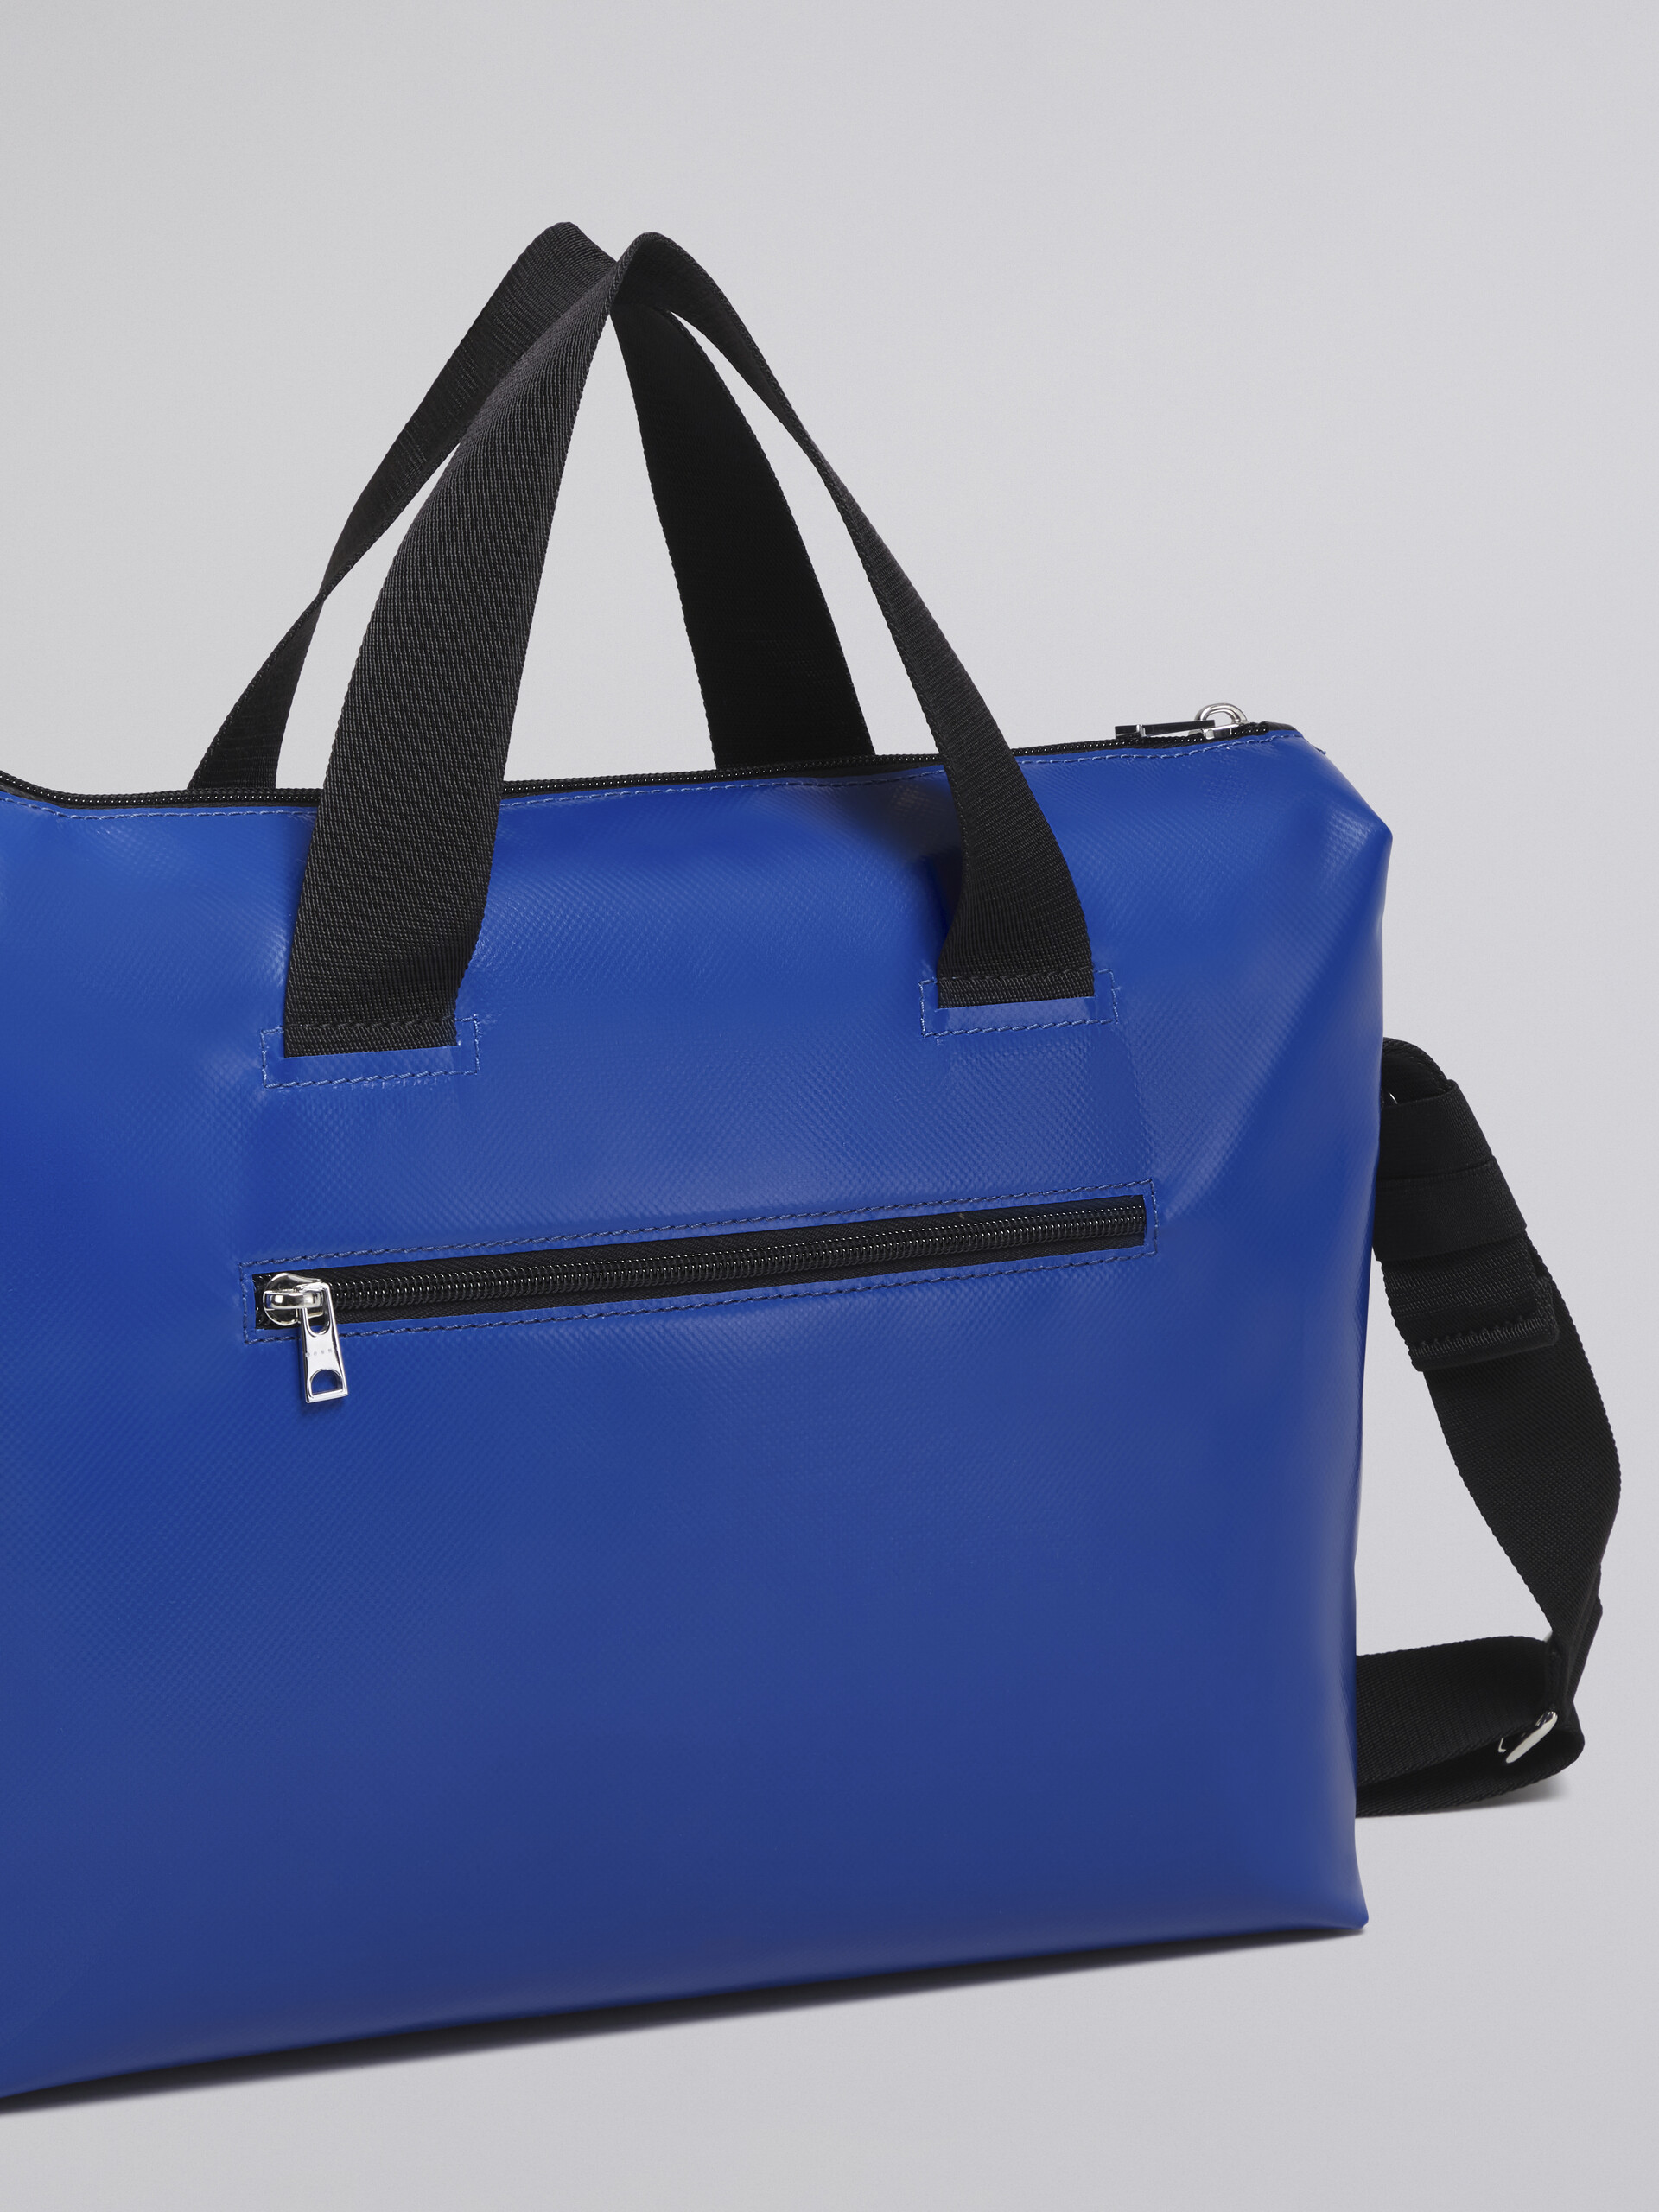 Black and blue TRIBECA bag - Handbag - Image 5